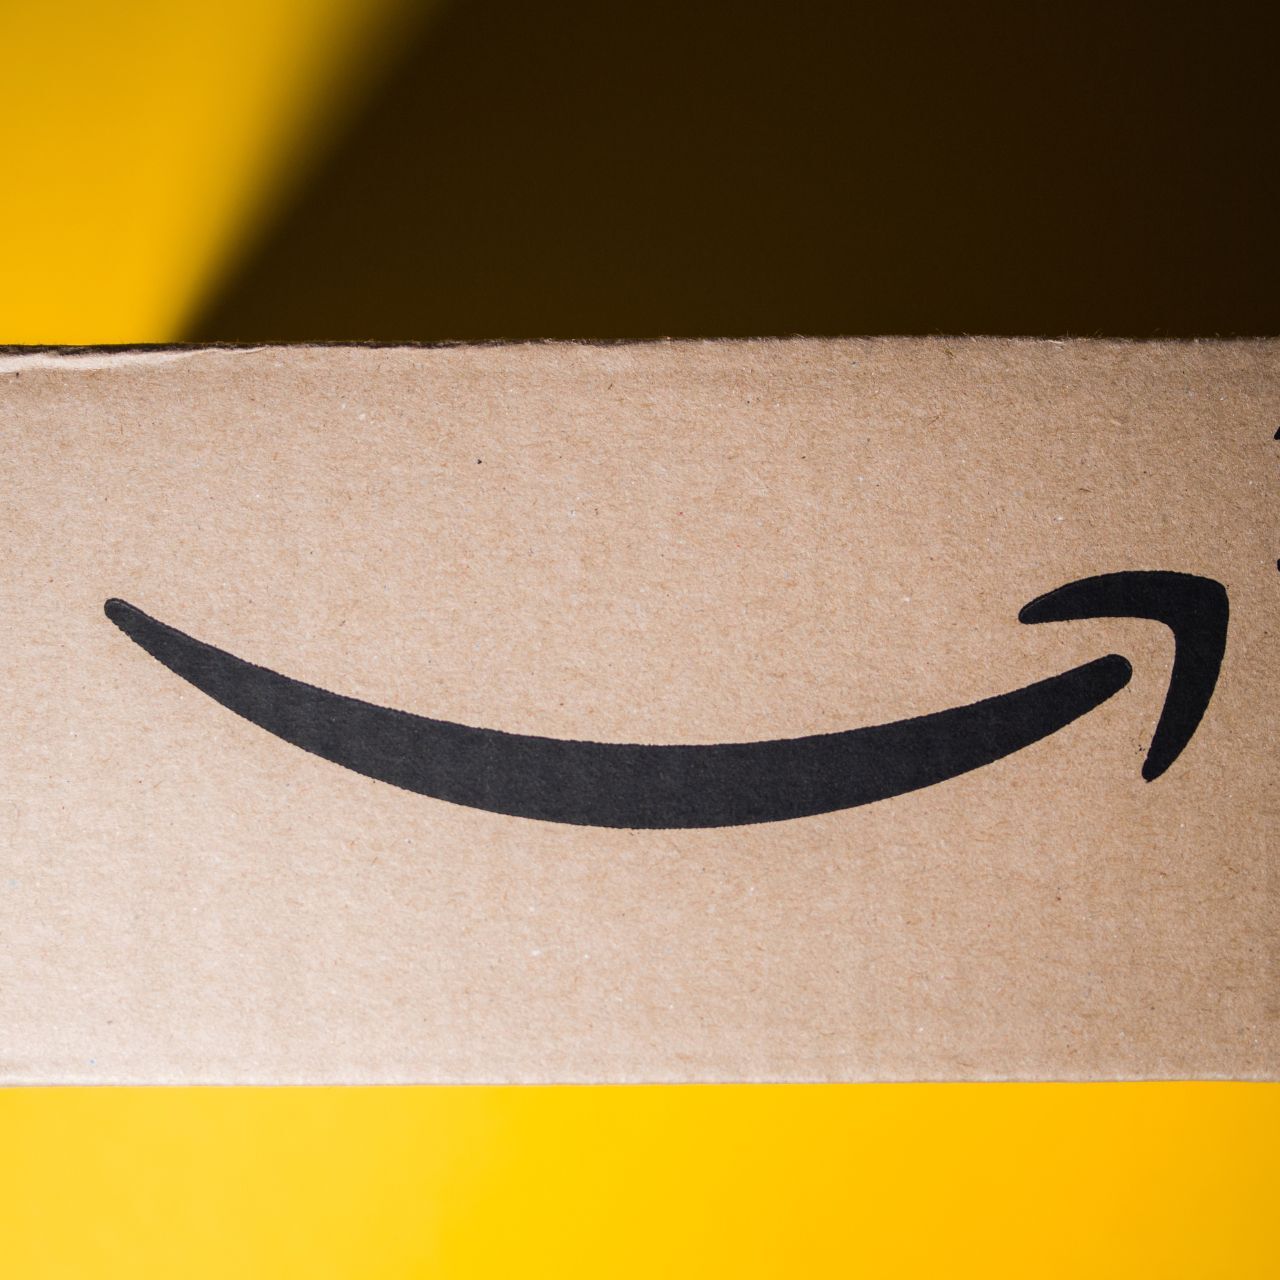 Amazon Ads: Az Amazon Ads hirdetései 25 százalékkal nőttek 2022 harmadik negyedévében